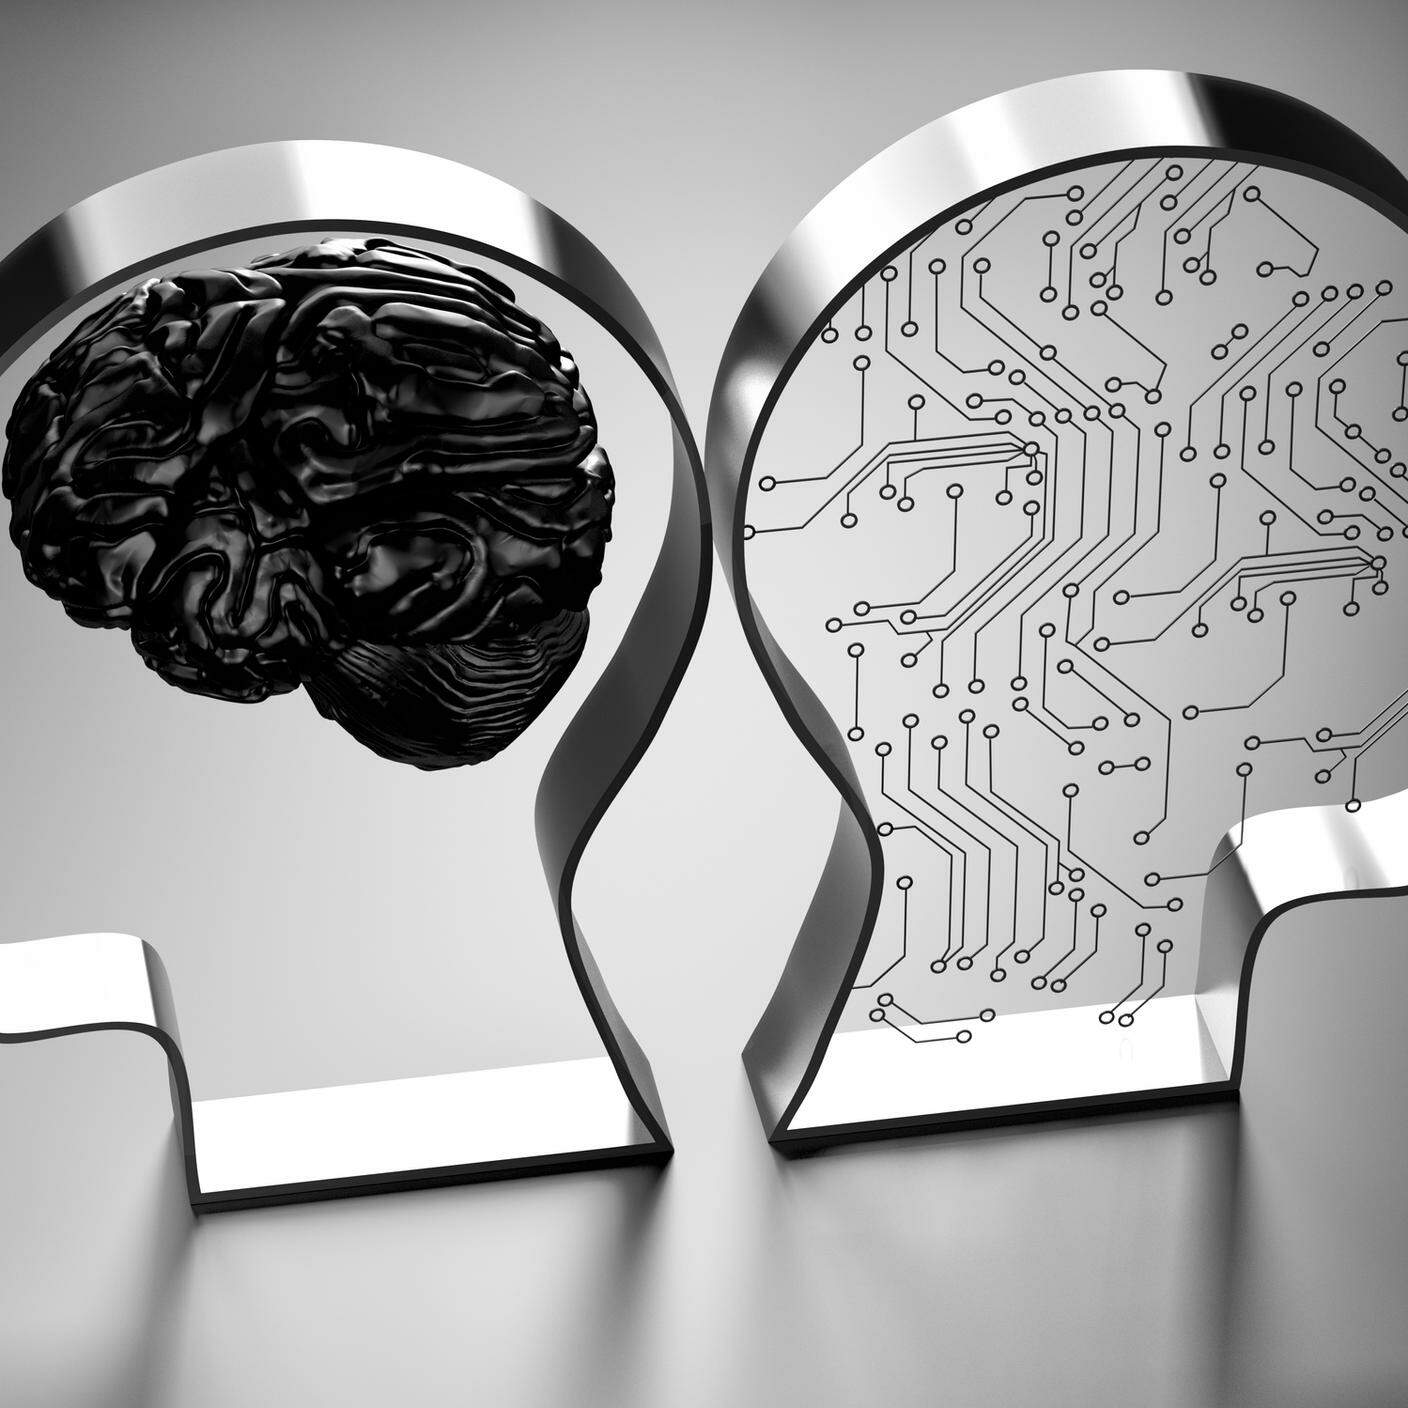 iStock-Neurone, Computer, Dati, Cervello umano, Big data